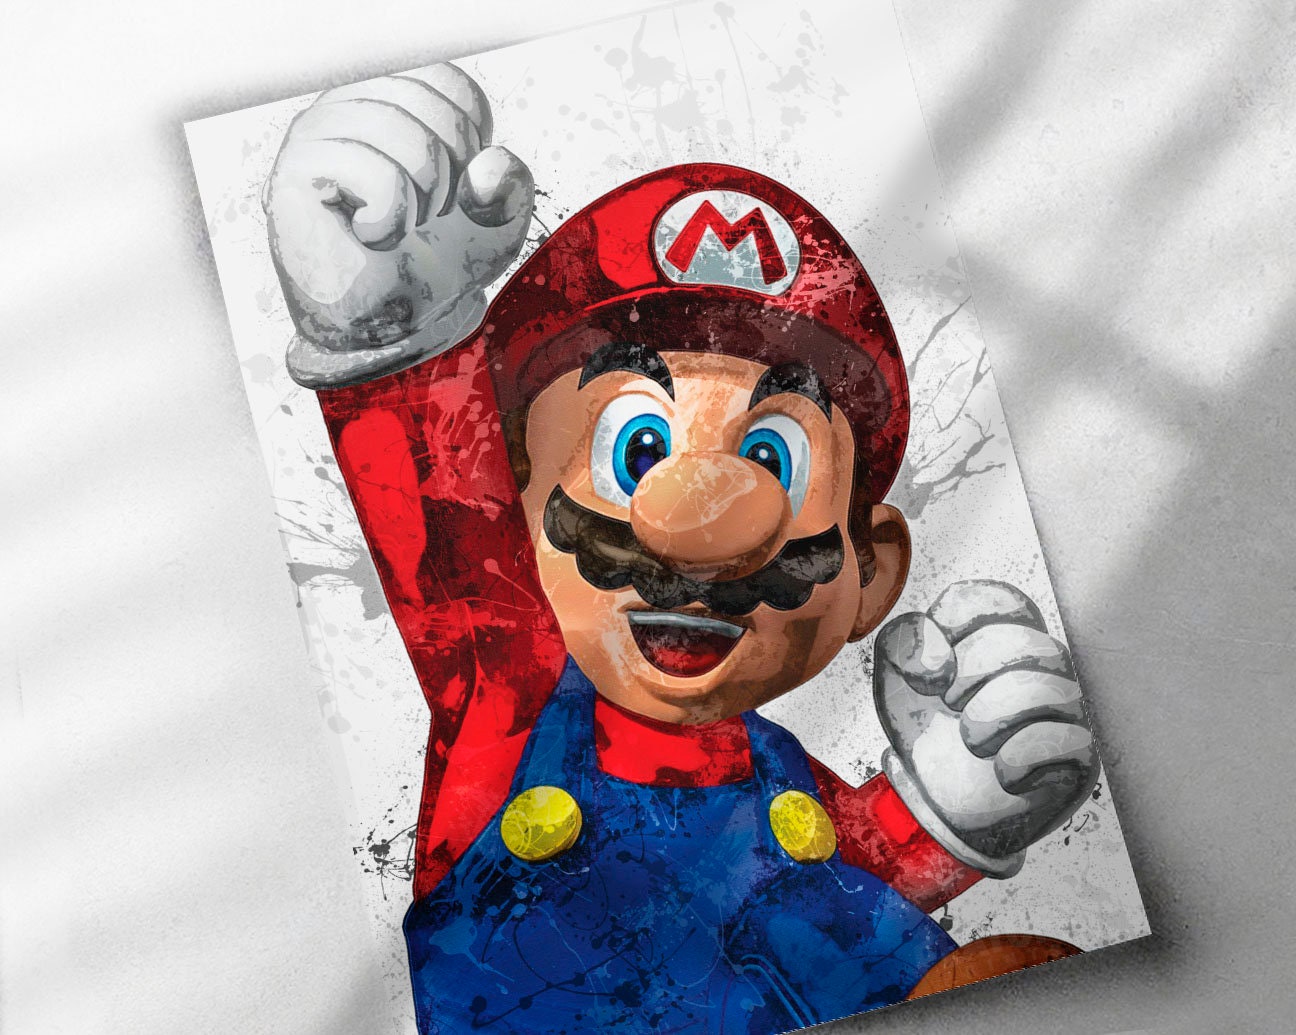 Baixar a última versão do Super Mario Bros X grátis em Português no CCM -  CCM